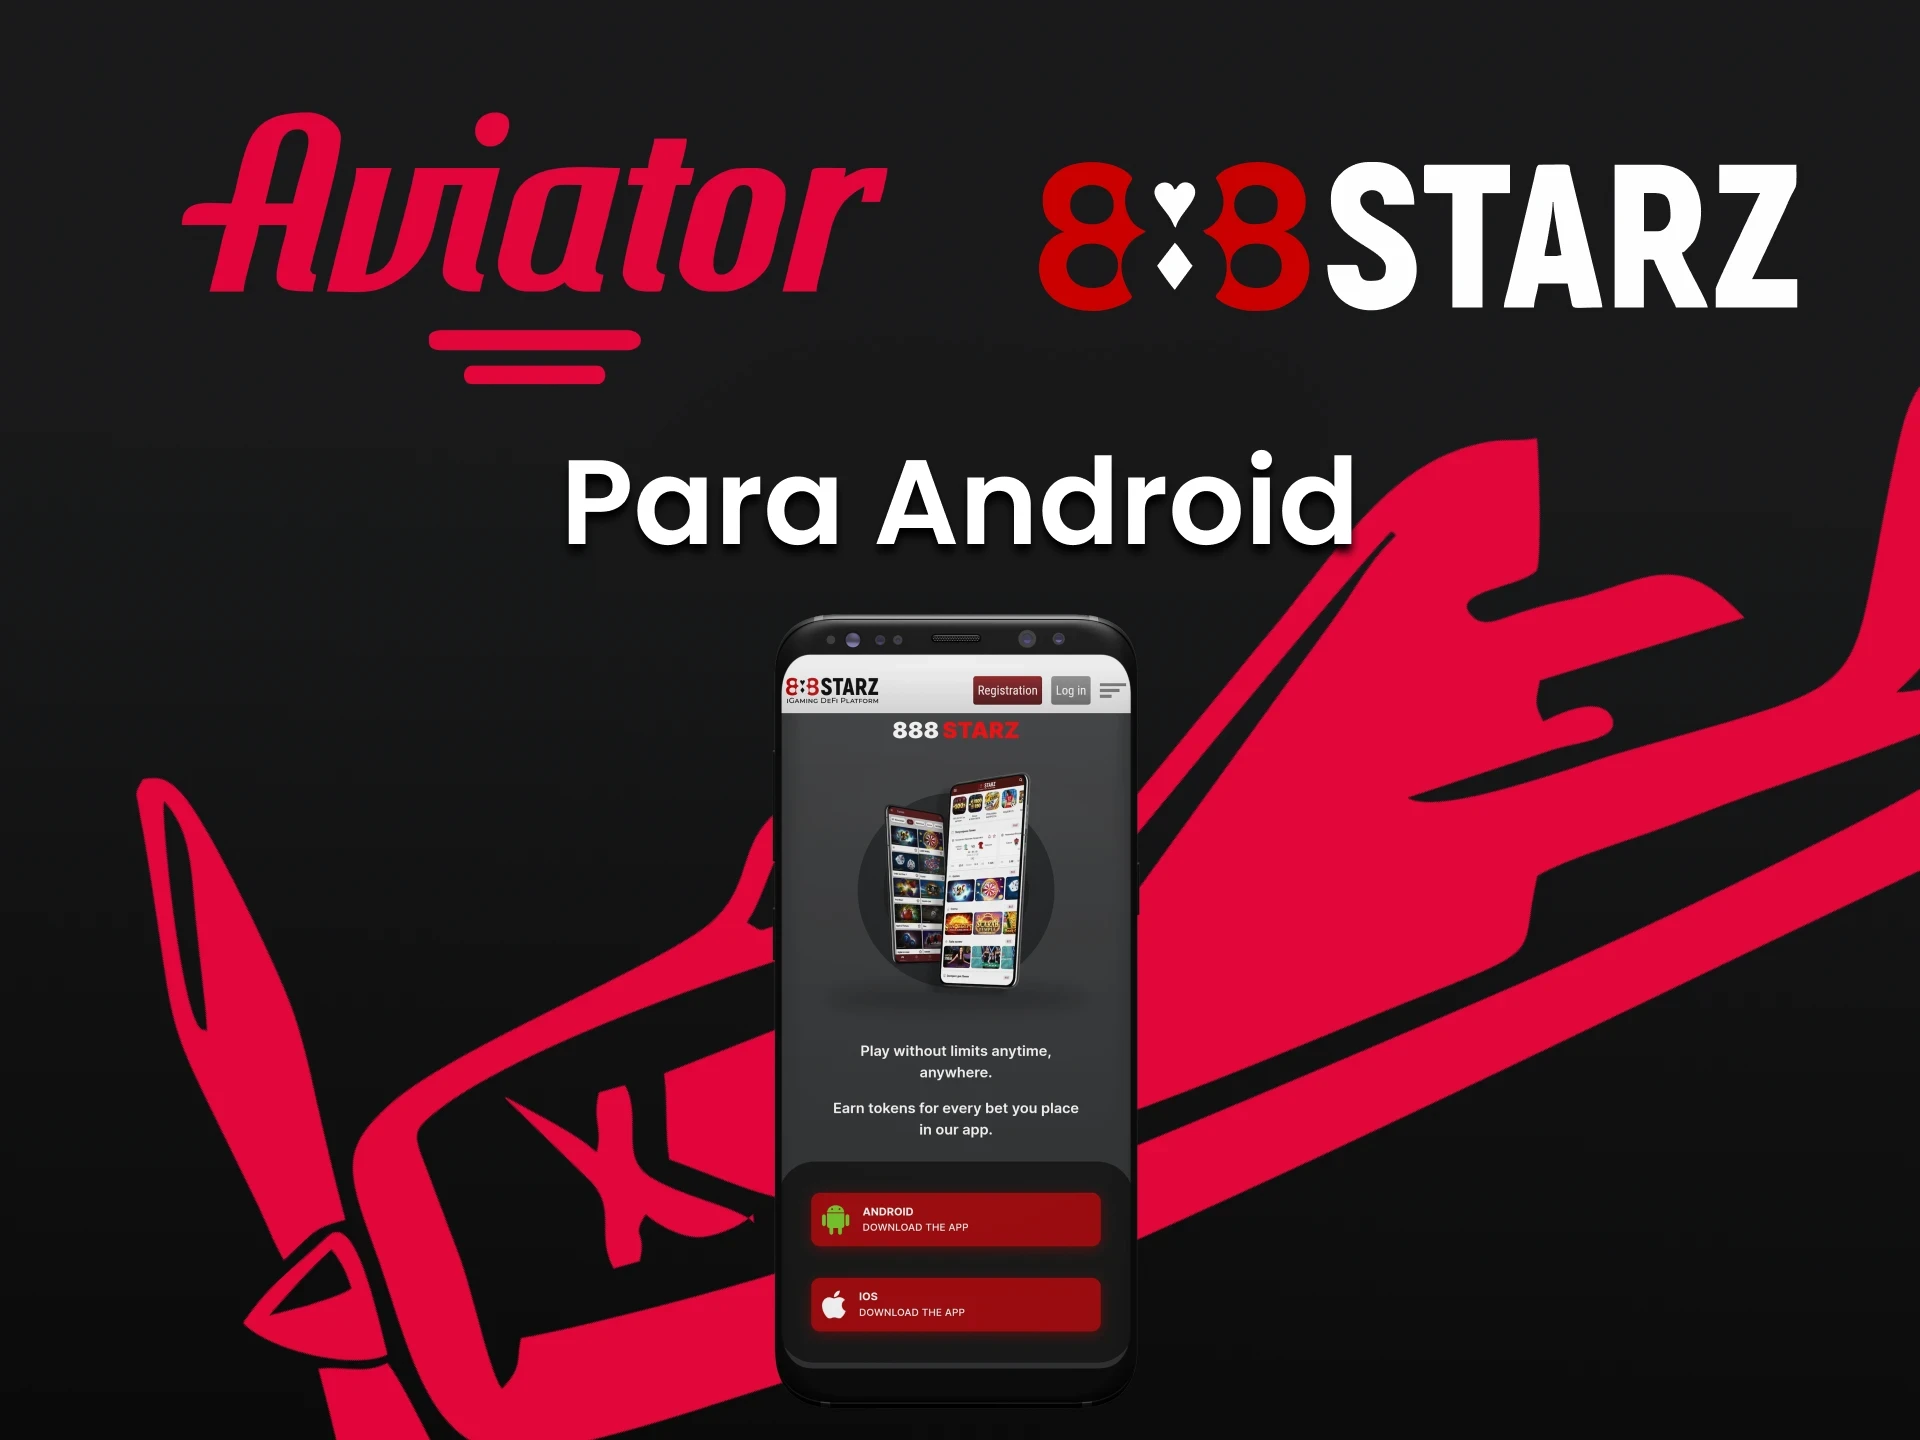  Instale o aplicativo 888starz para Android.